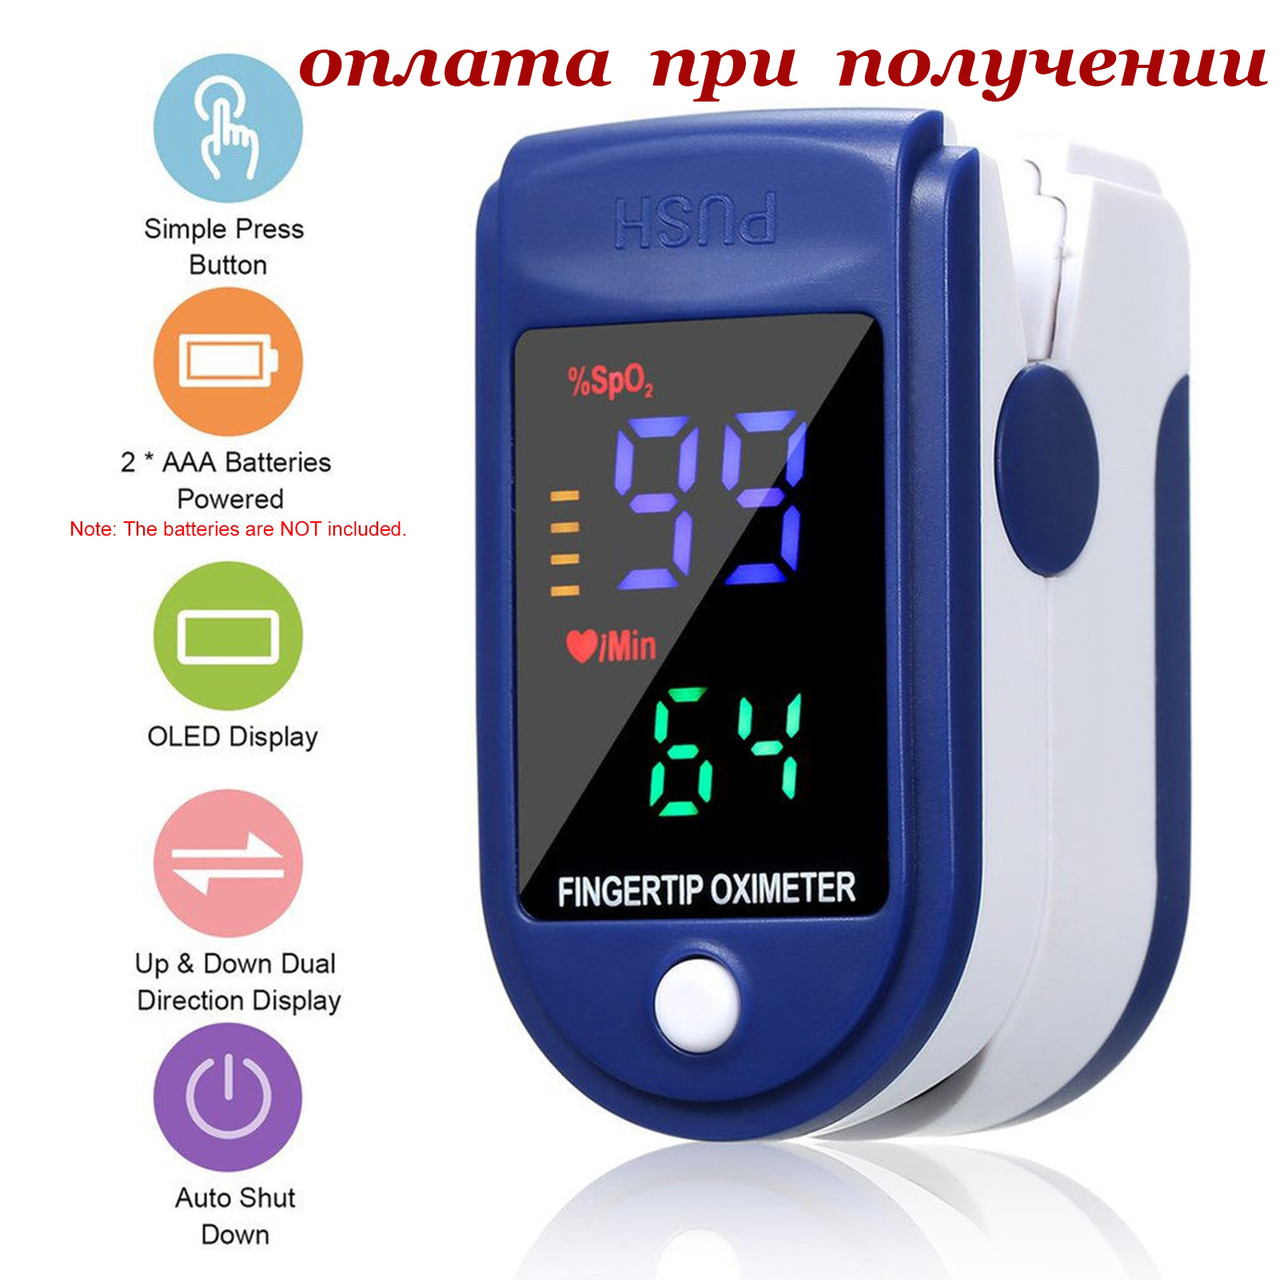 Пульсоксиметр оксиметр Oximeter fingertip для вимірювання рівня кисню (сатурації) у крові та пульсу на палець